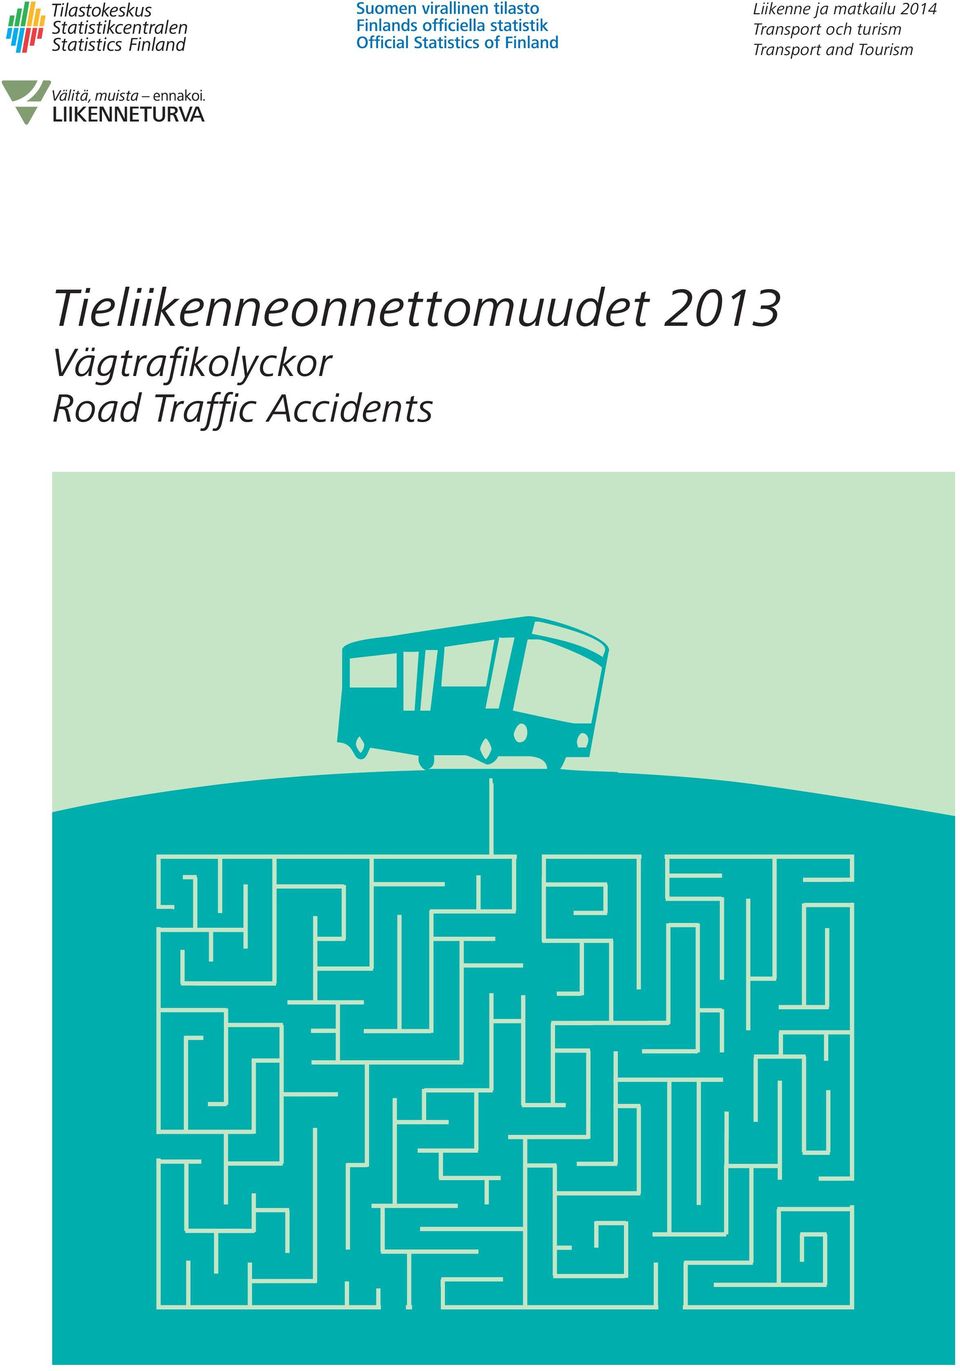 Accidents Liikenne ja matkailu